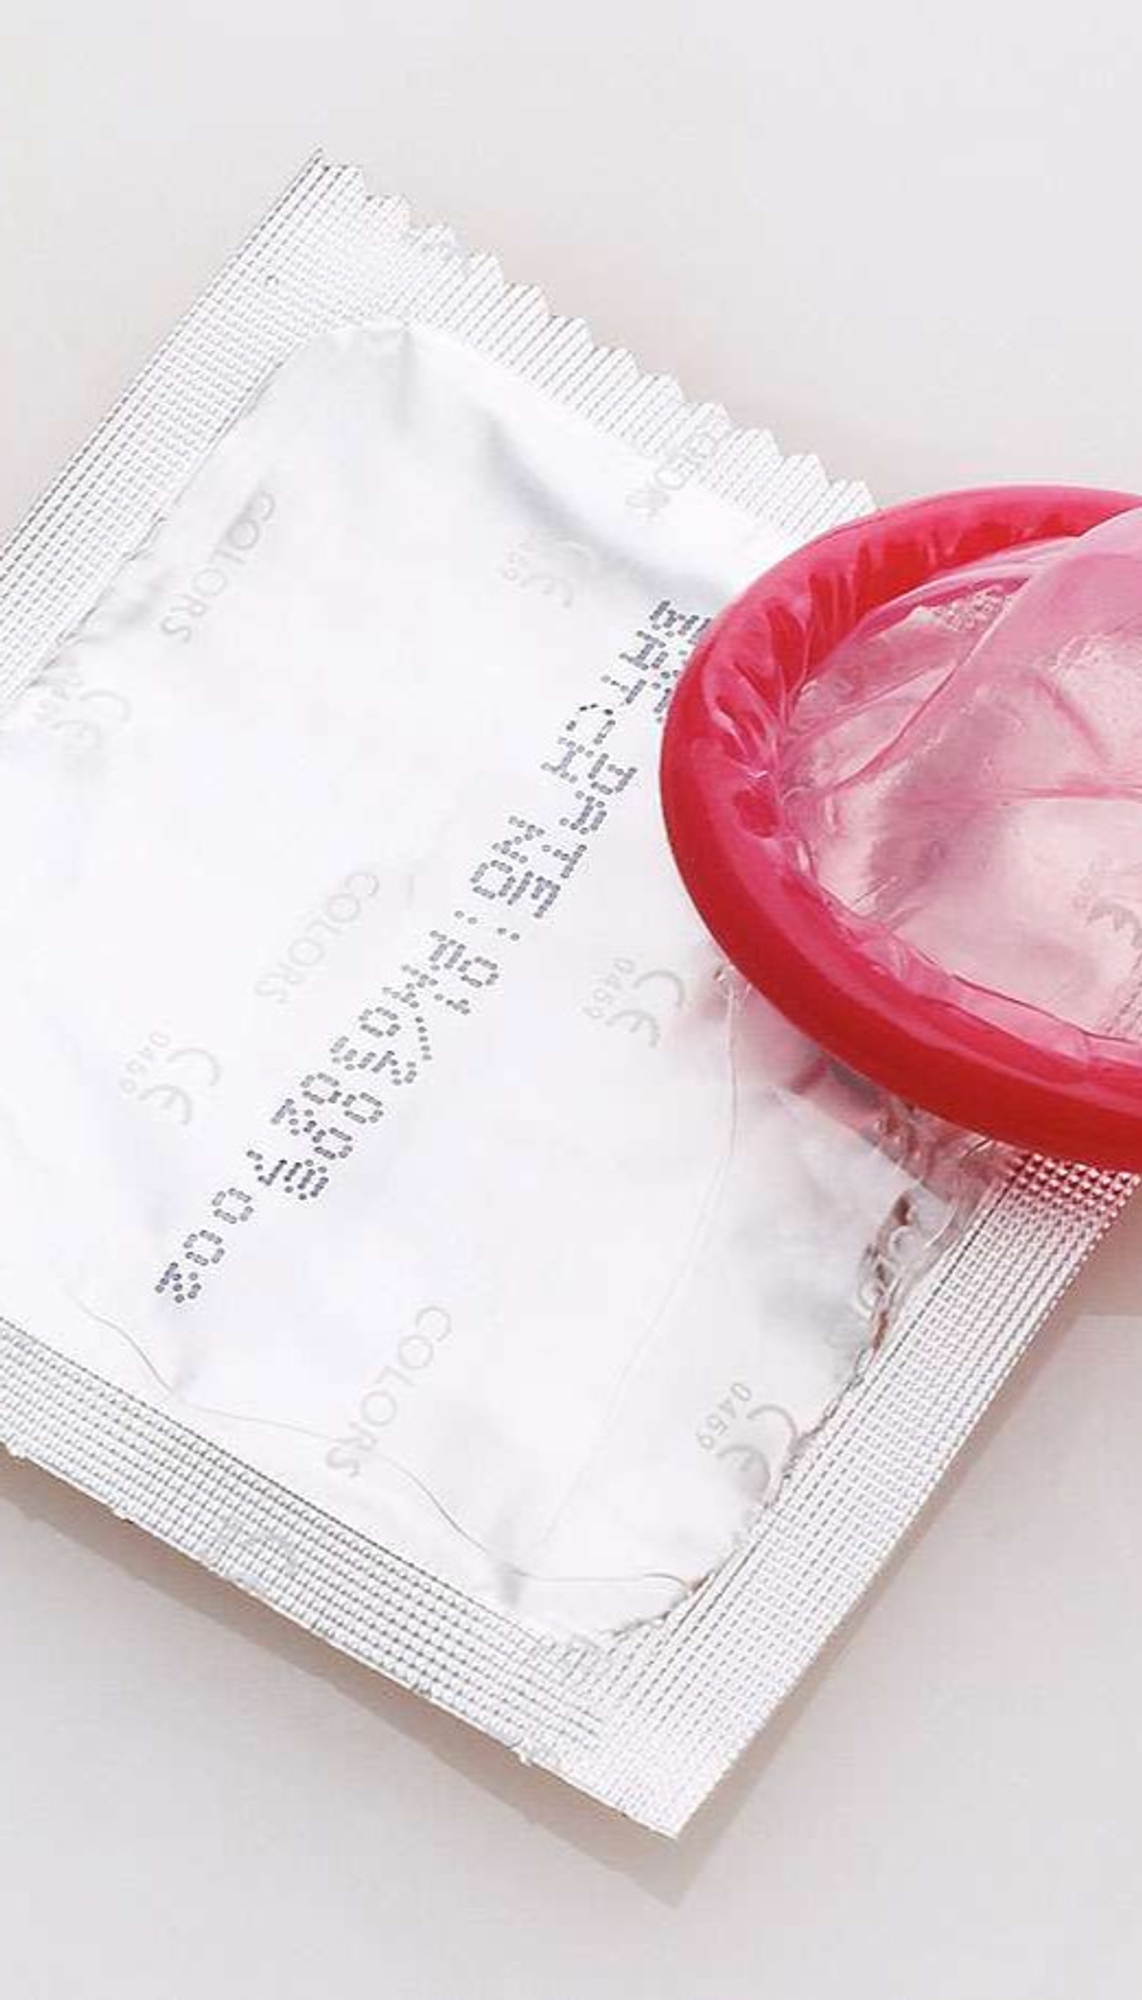 Les ventes de préservatifs s'effondrent depuis la pandémie